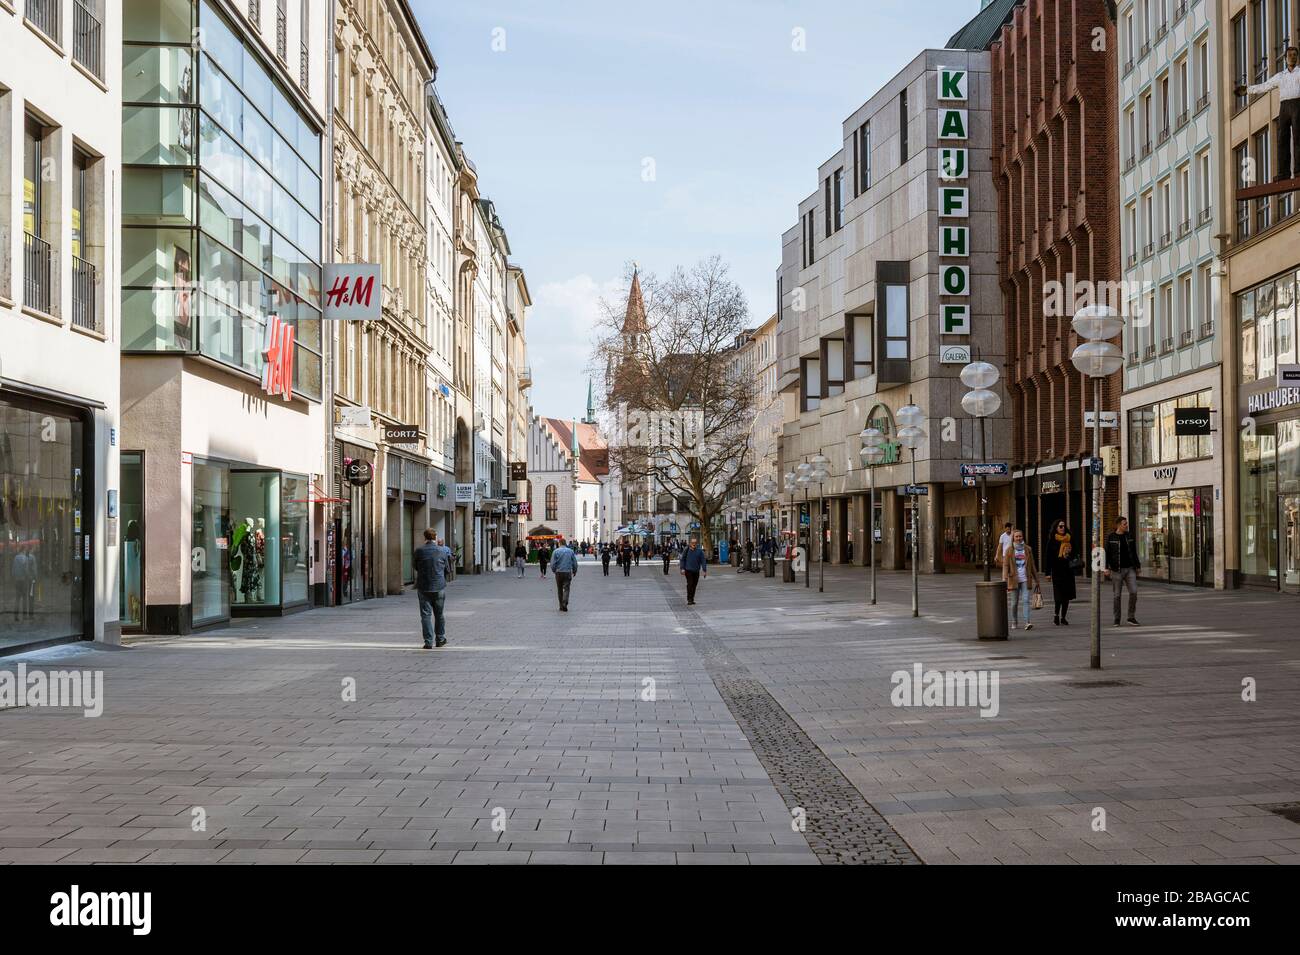 Baviera-Monaco-Germania, 20. März 2020: Poche persone camminano sulla piazza Marienplatz di Monaco, che è di solito affollata, ma rimane vuota a causa del nuovo arredo Foto Stock